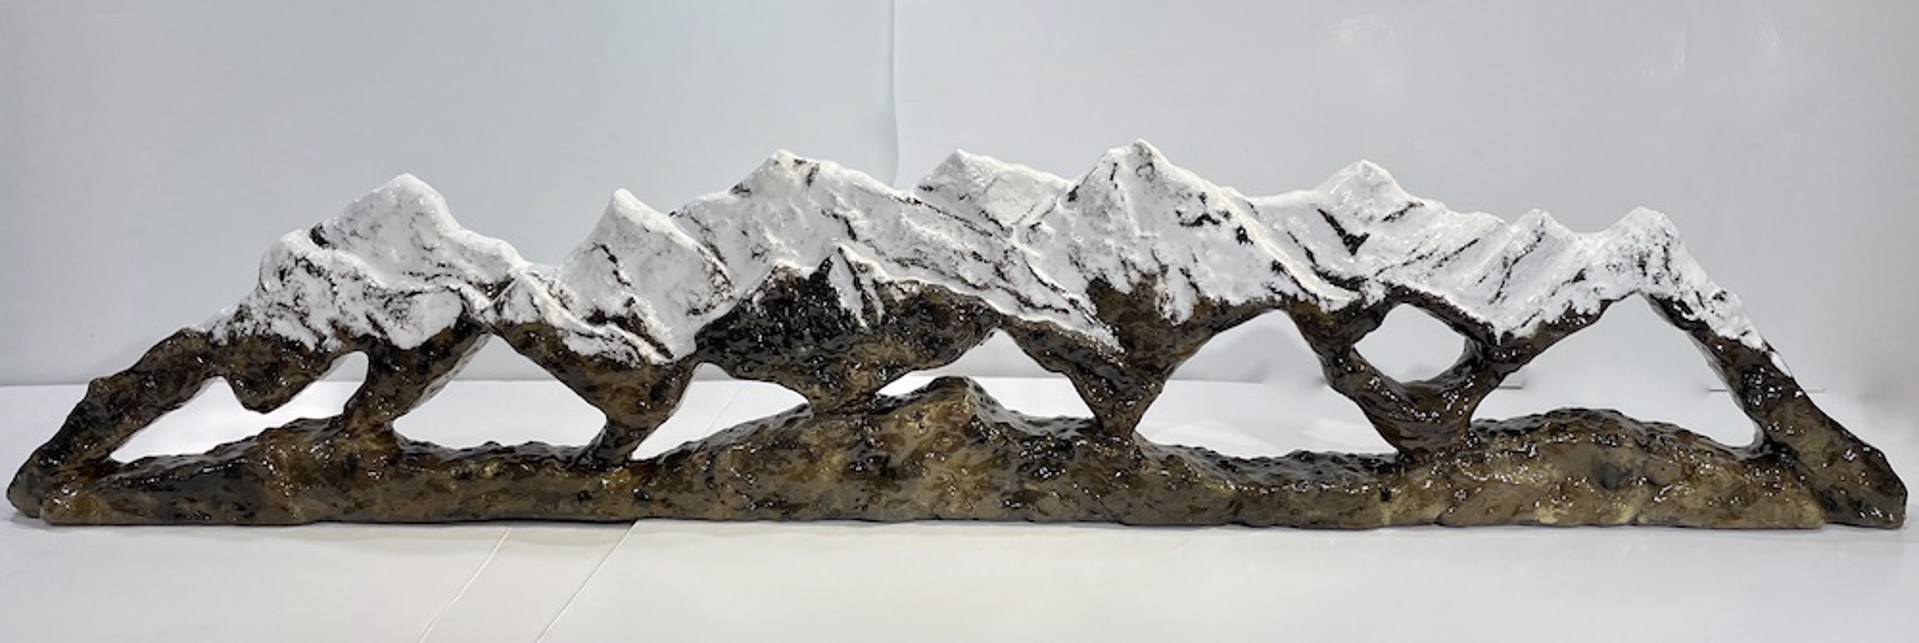 Mountain Range by Allan Waidman